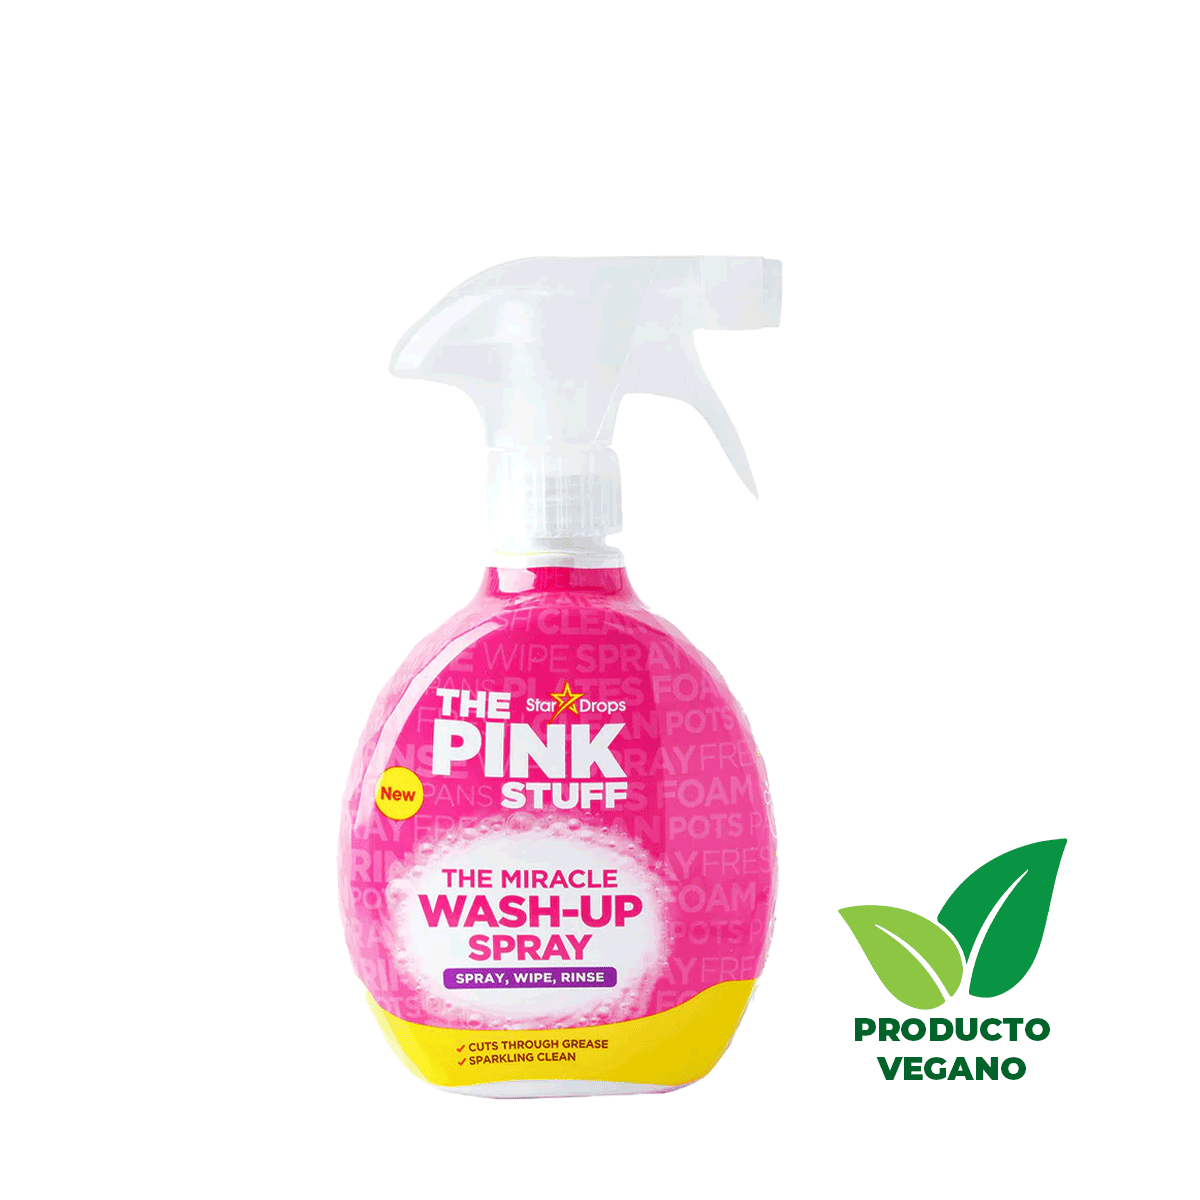 El Lavalozas Milagroso Wash-Up en Spray 500 ml The Pink Stuff - 🌱 🇬🇧 Producto Vegano del Reino Unido